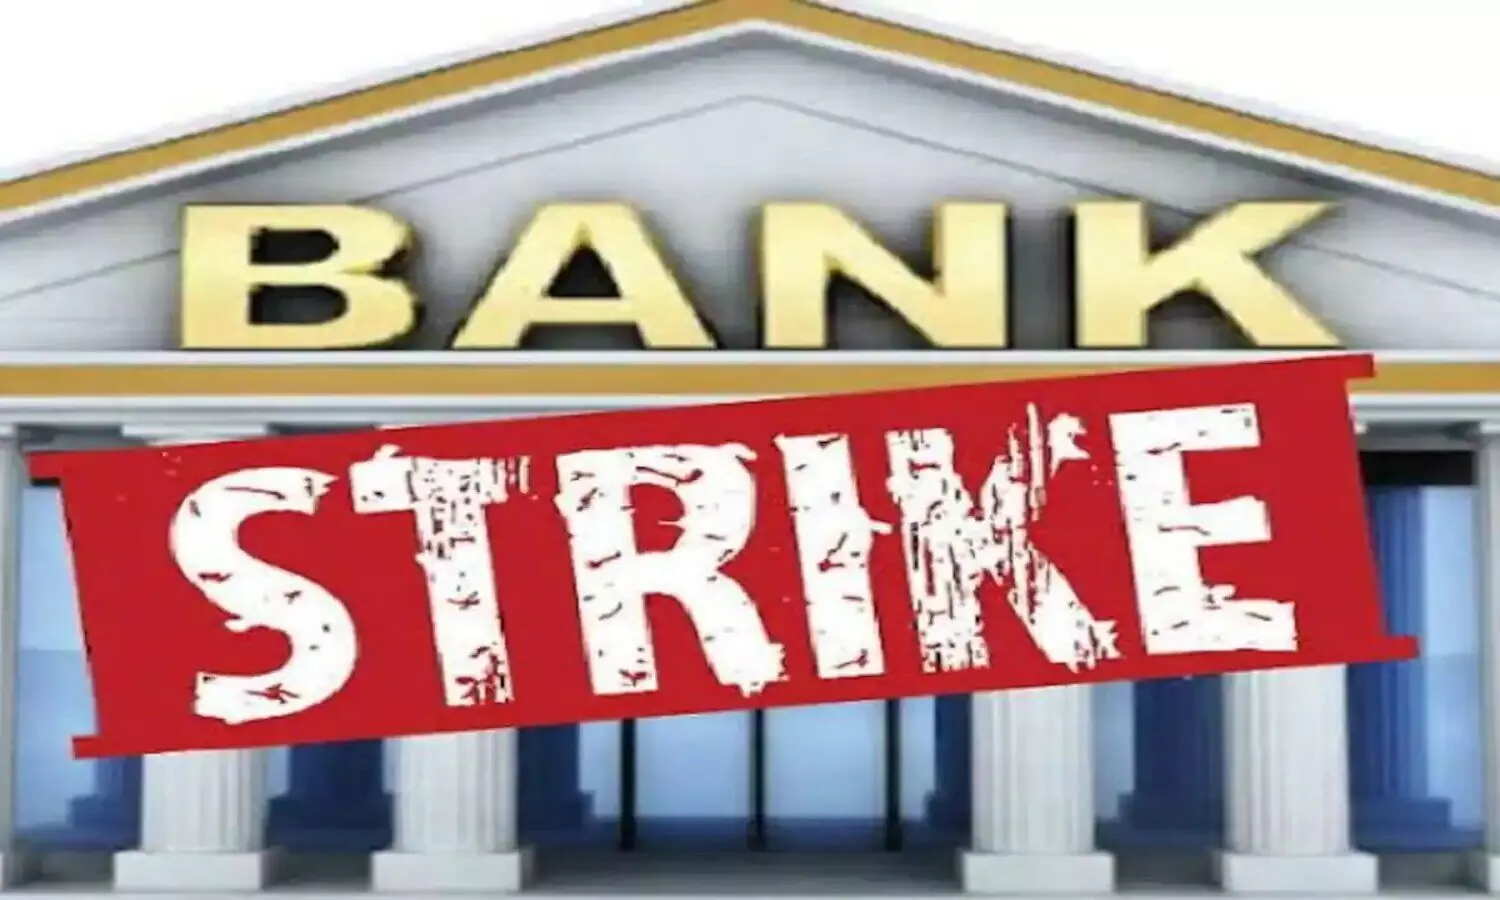 Bank Strike: खाताधारक जल्द निपटा लें कामकाज, तीन दिन ठप रहेंगे बैंक, कर्मचारी करेंगे हड़ताल